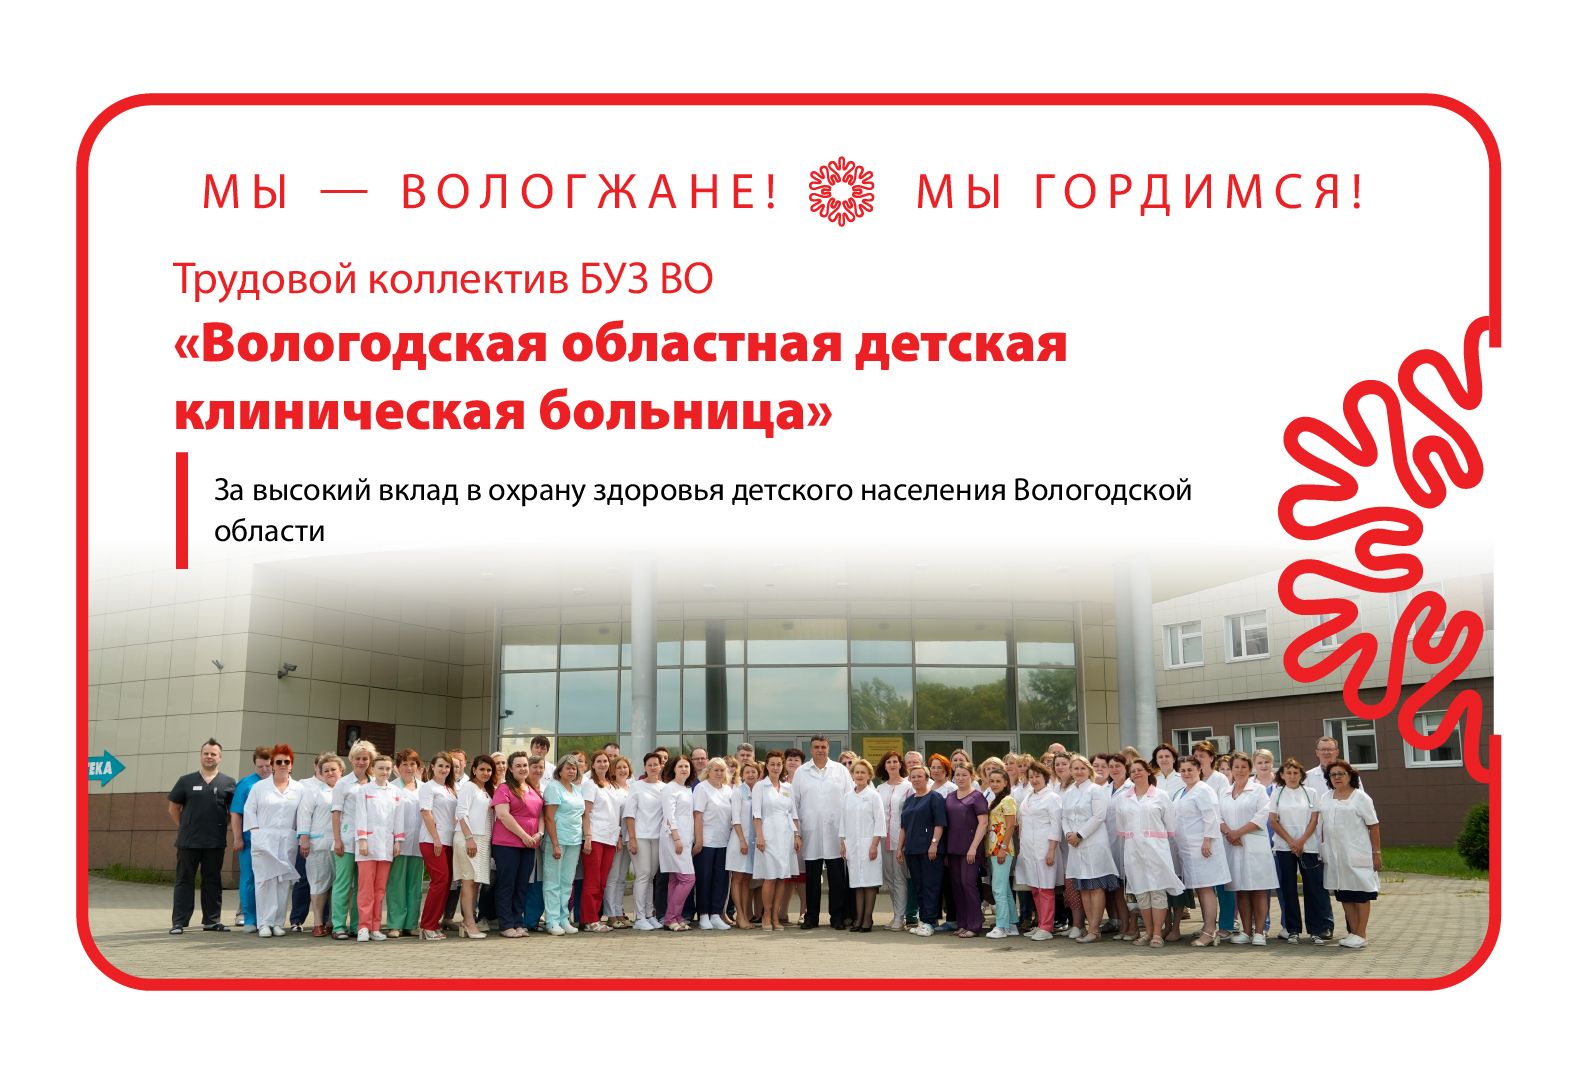 БУЗ ВО «Вологодская областная детская клиническая больница».